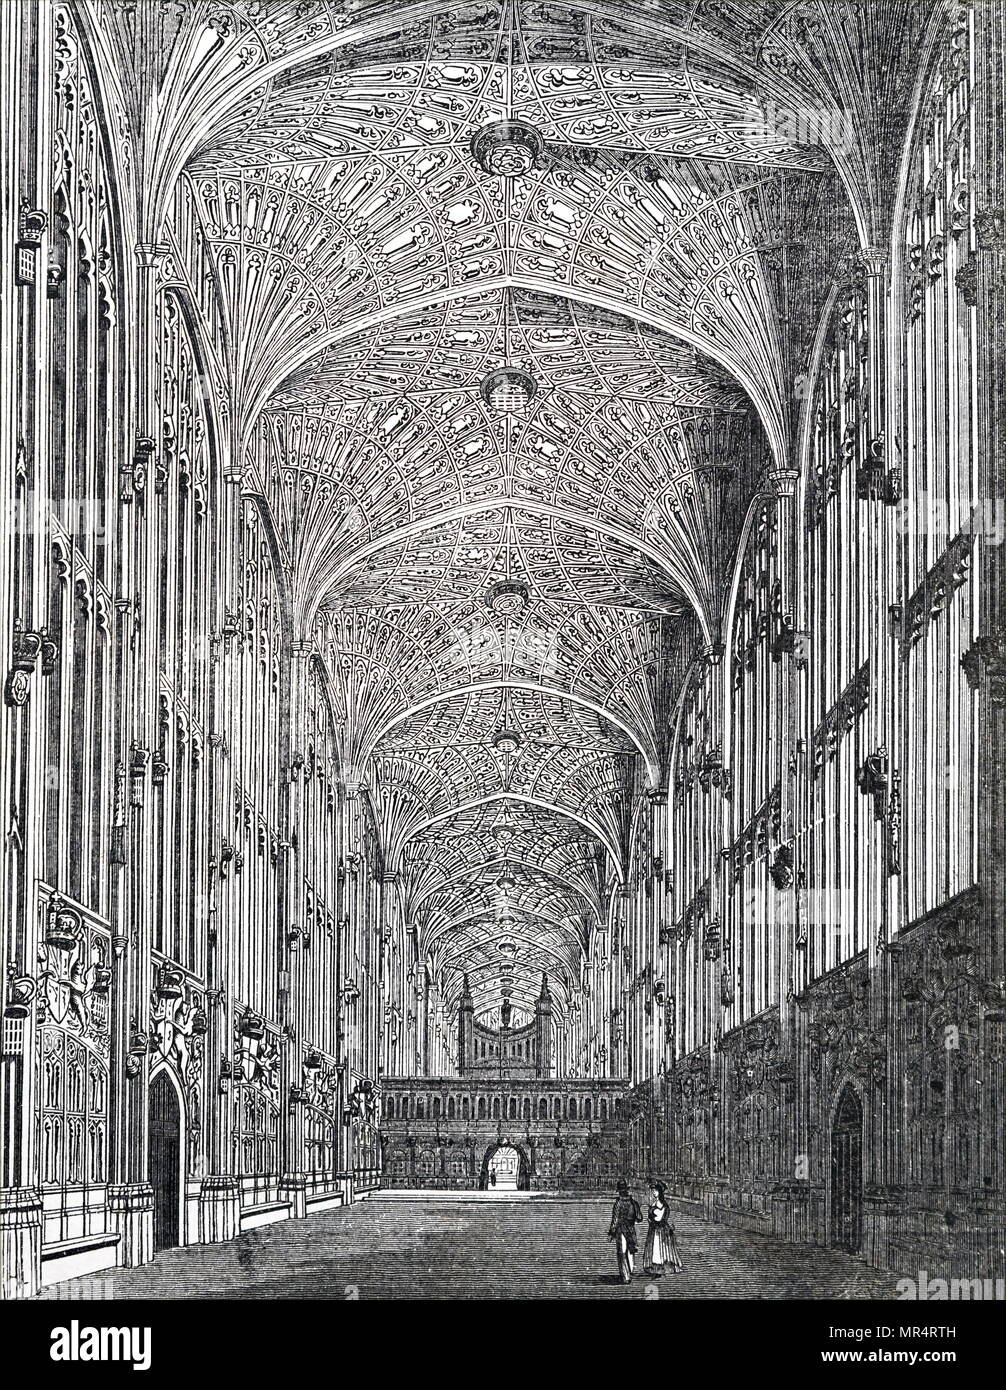 Incisione raffigurante l'interno della Cappella del King's College di Cambridge, mostrando il ventilatore soffitto con soffitto a volta. Datata del XIX secolo Foto Stock